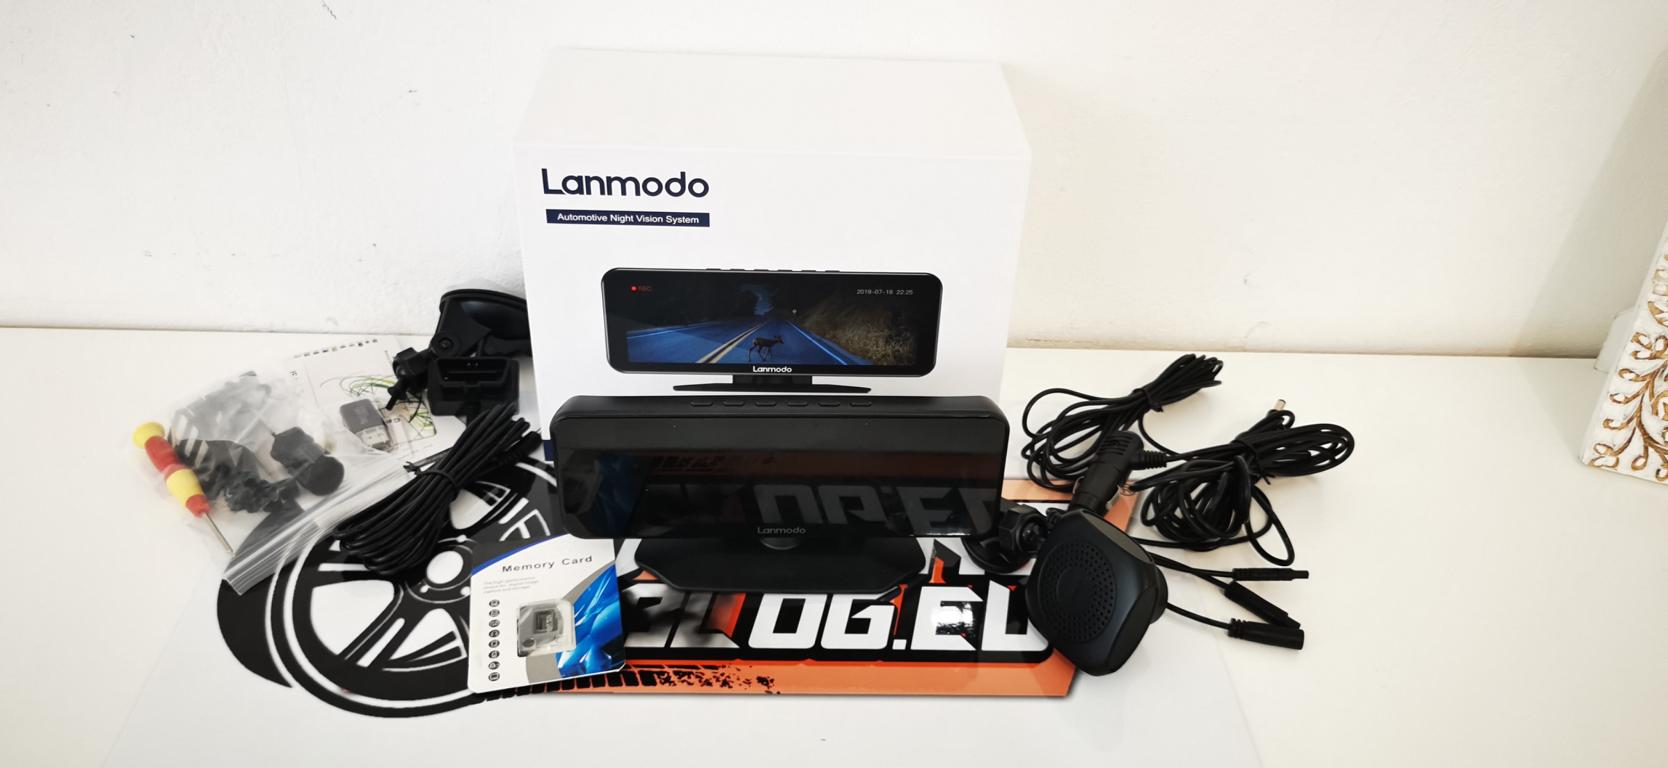 Ausprobiert: Lanmodo Vast M1 Dashcam mit Nachtsichtfunktion!